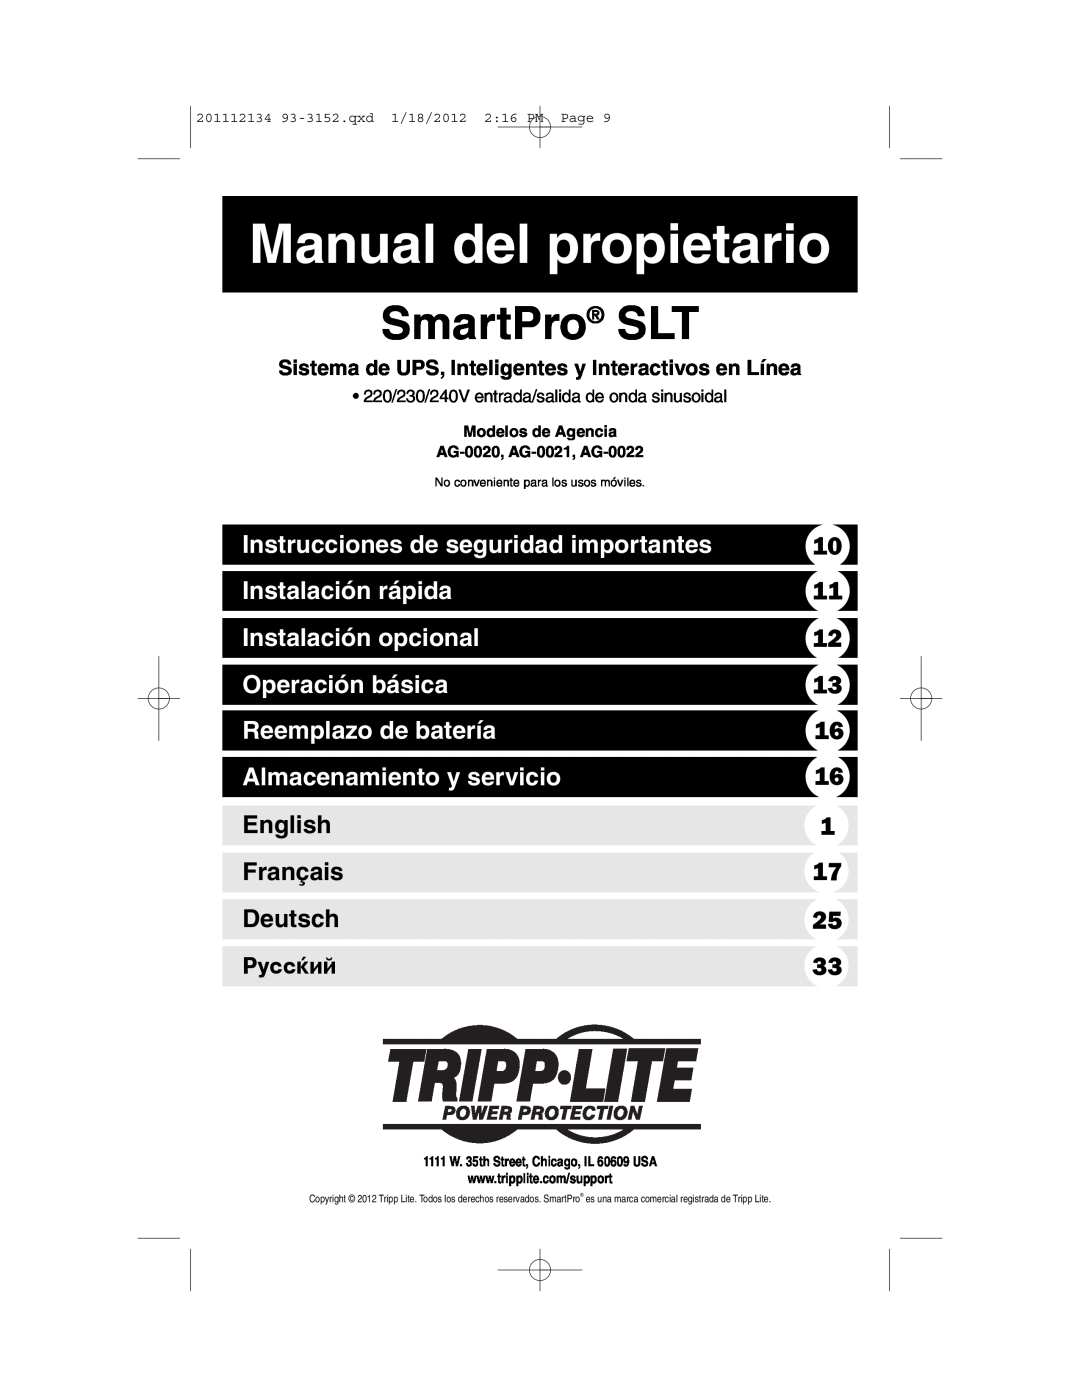 Tripp Lite AG-0022 Manual del propietario, Instrucciones de seguridad importantes, Instalación rápida, Operación básica 